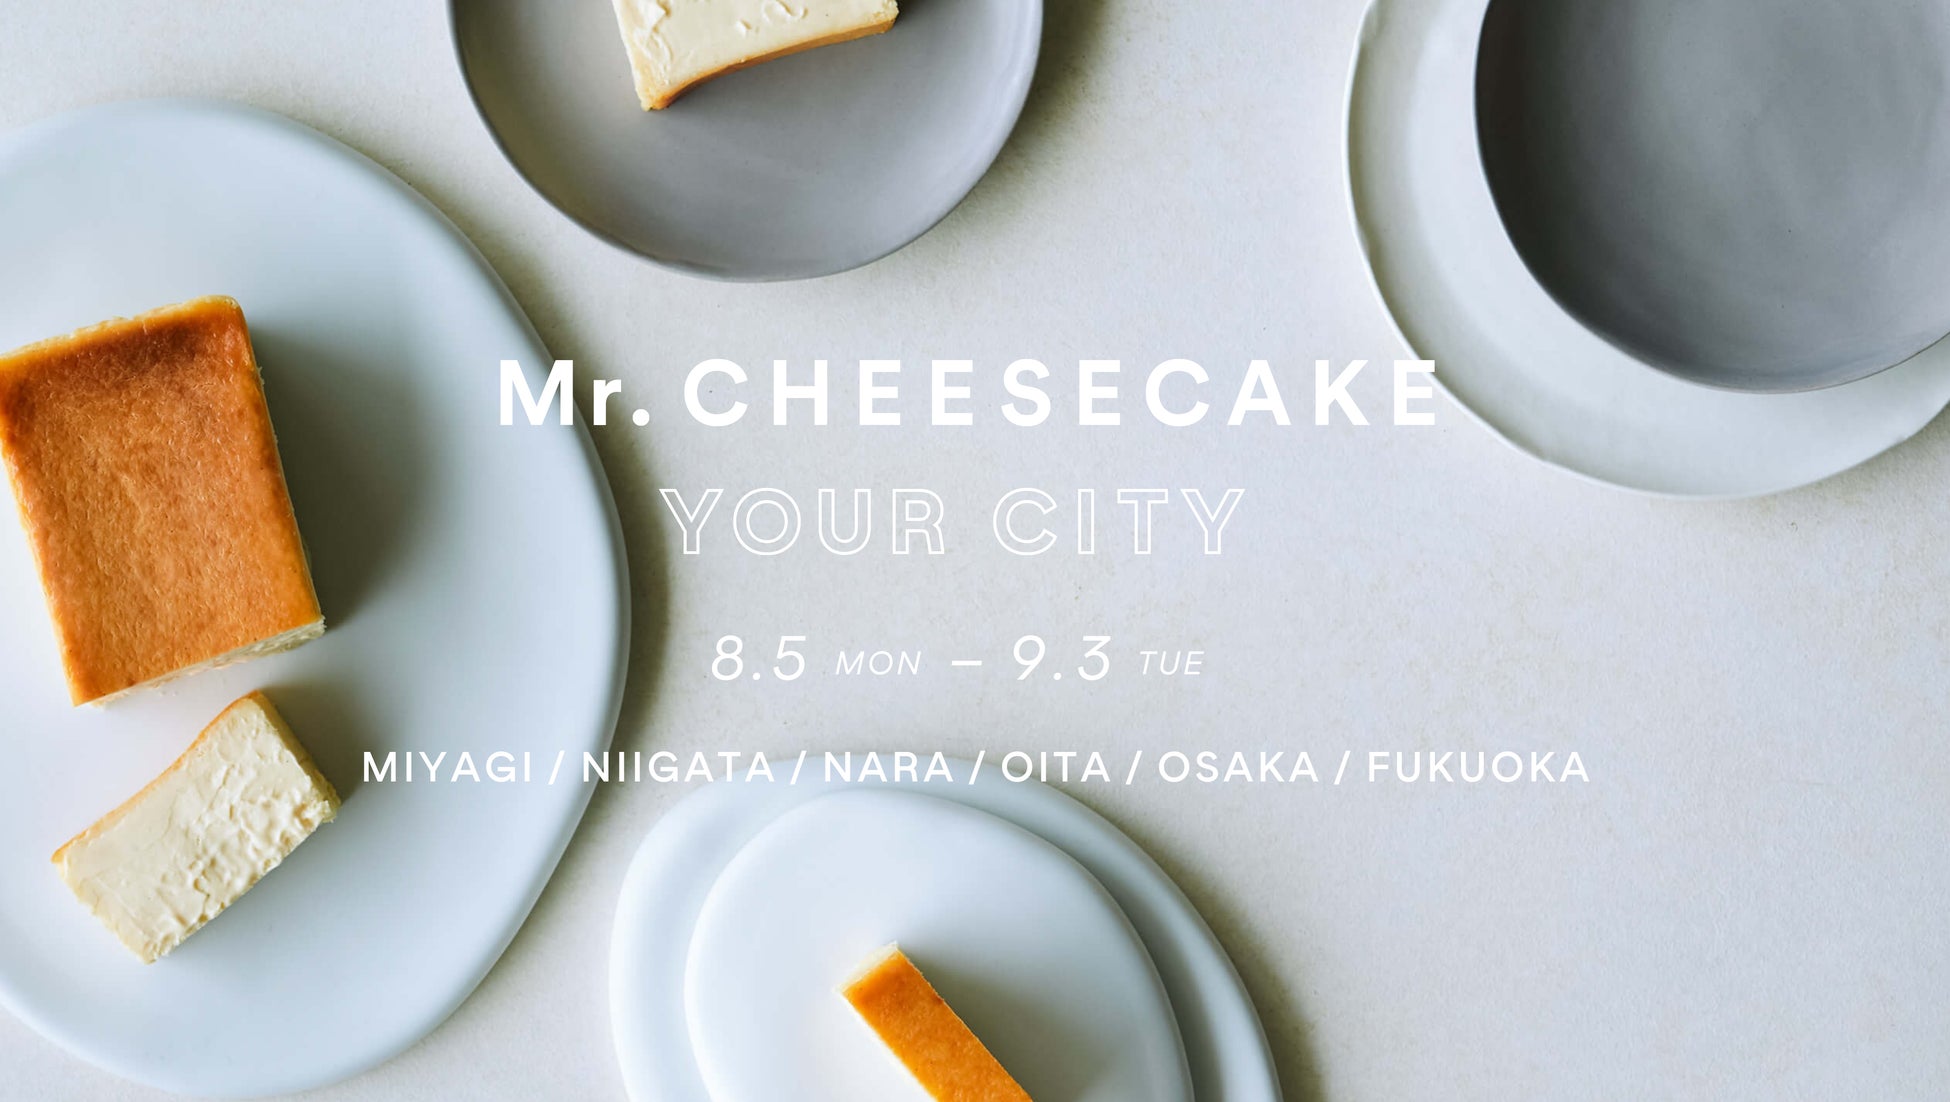 【Mr. CHEESECAKE YOUR CITY】人生最高のチーズケーキのポップアップストアが宮城・新潟・大分・大阪・福岡に登場！さらにブランド初となる奈良にも出店決定